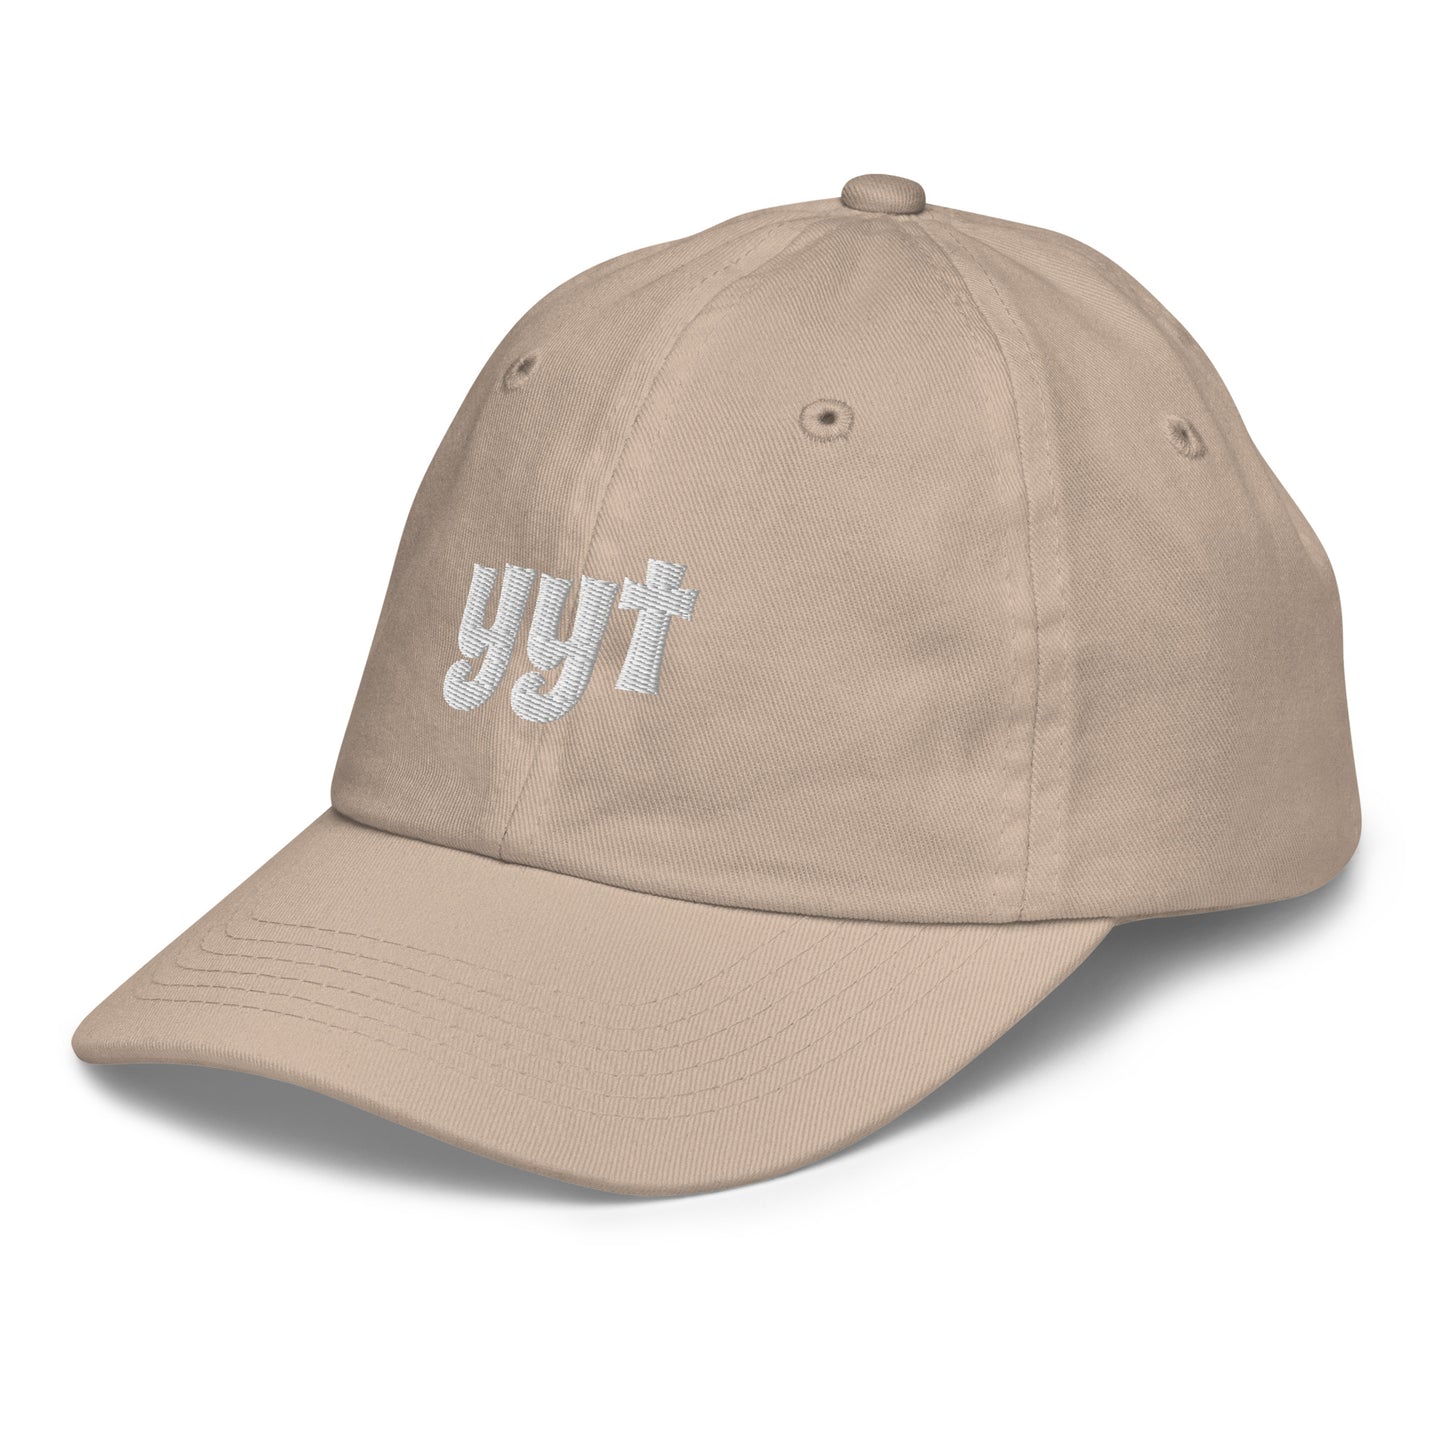 Groovy Kid's Baseball Cap - White • YYT St. John's • YHM Designs - Image 22